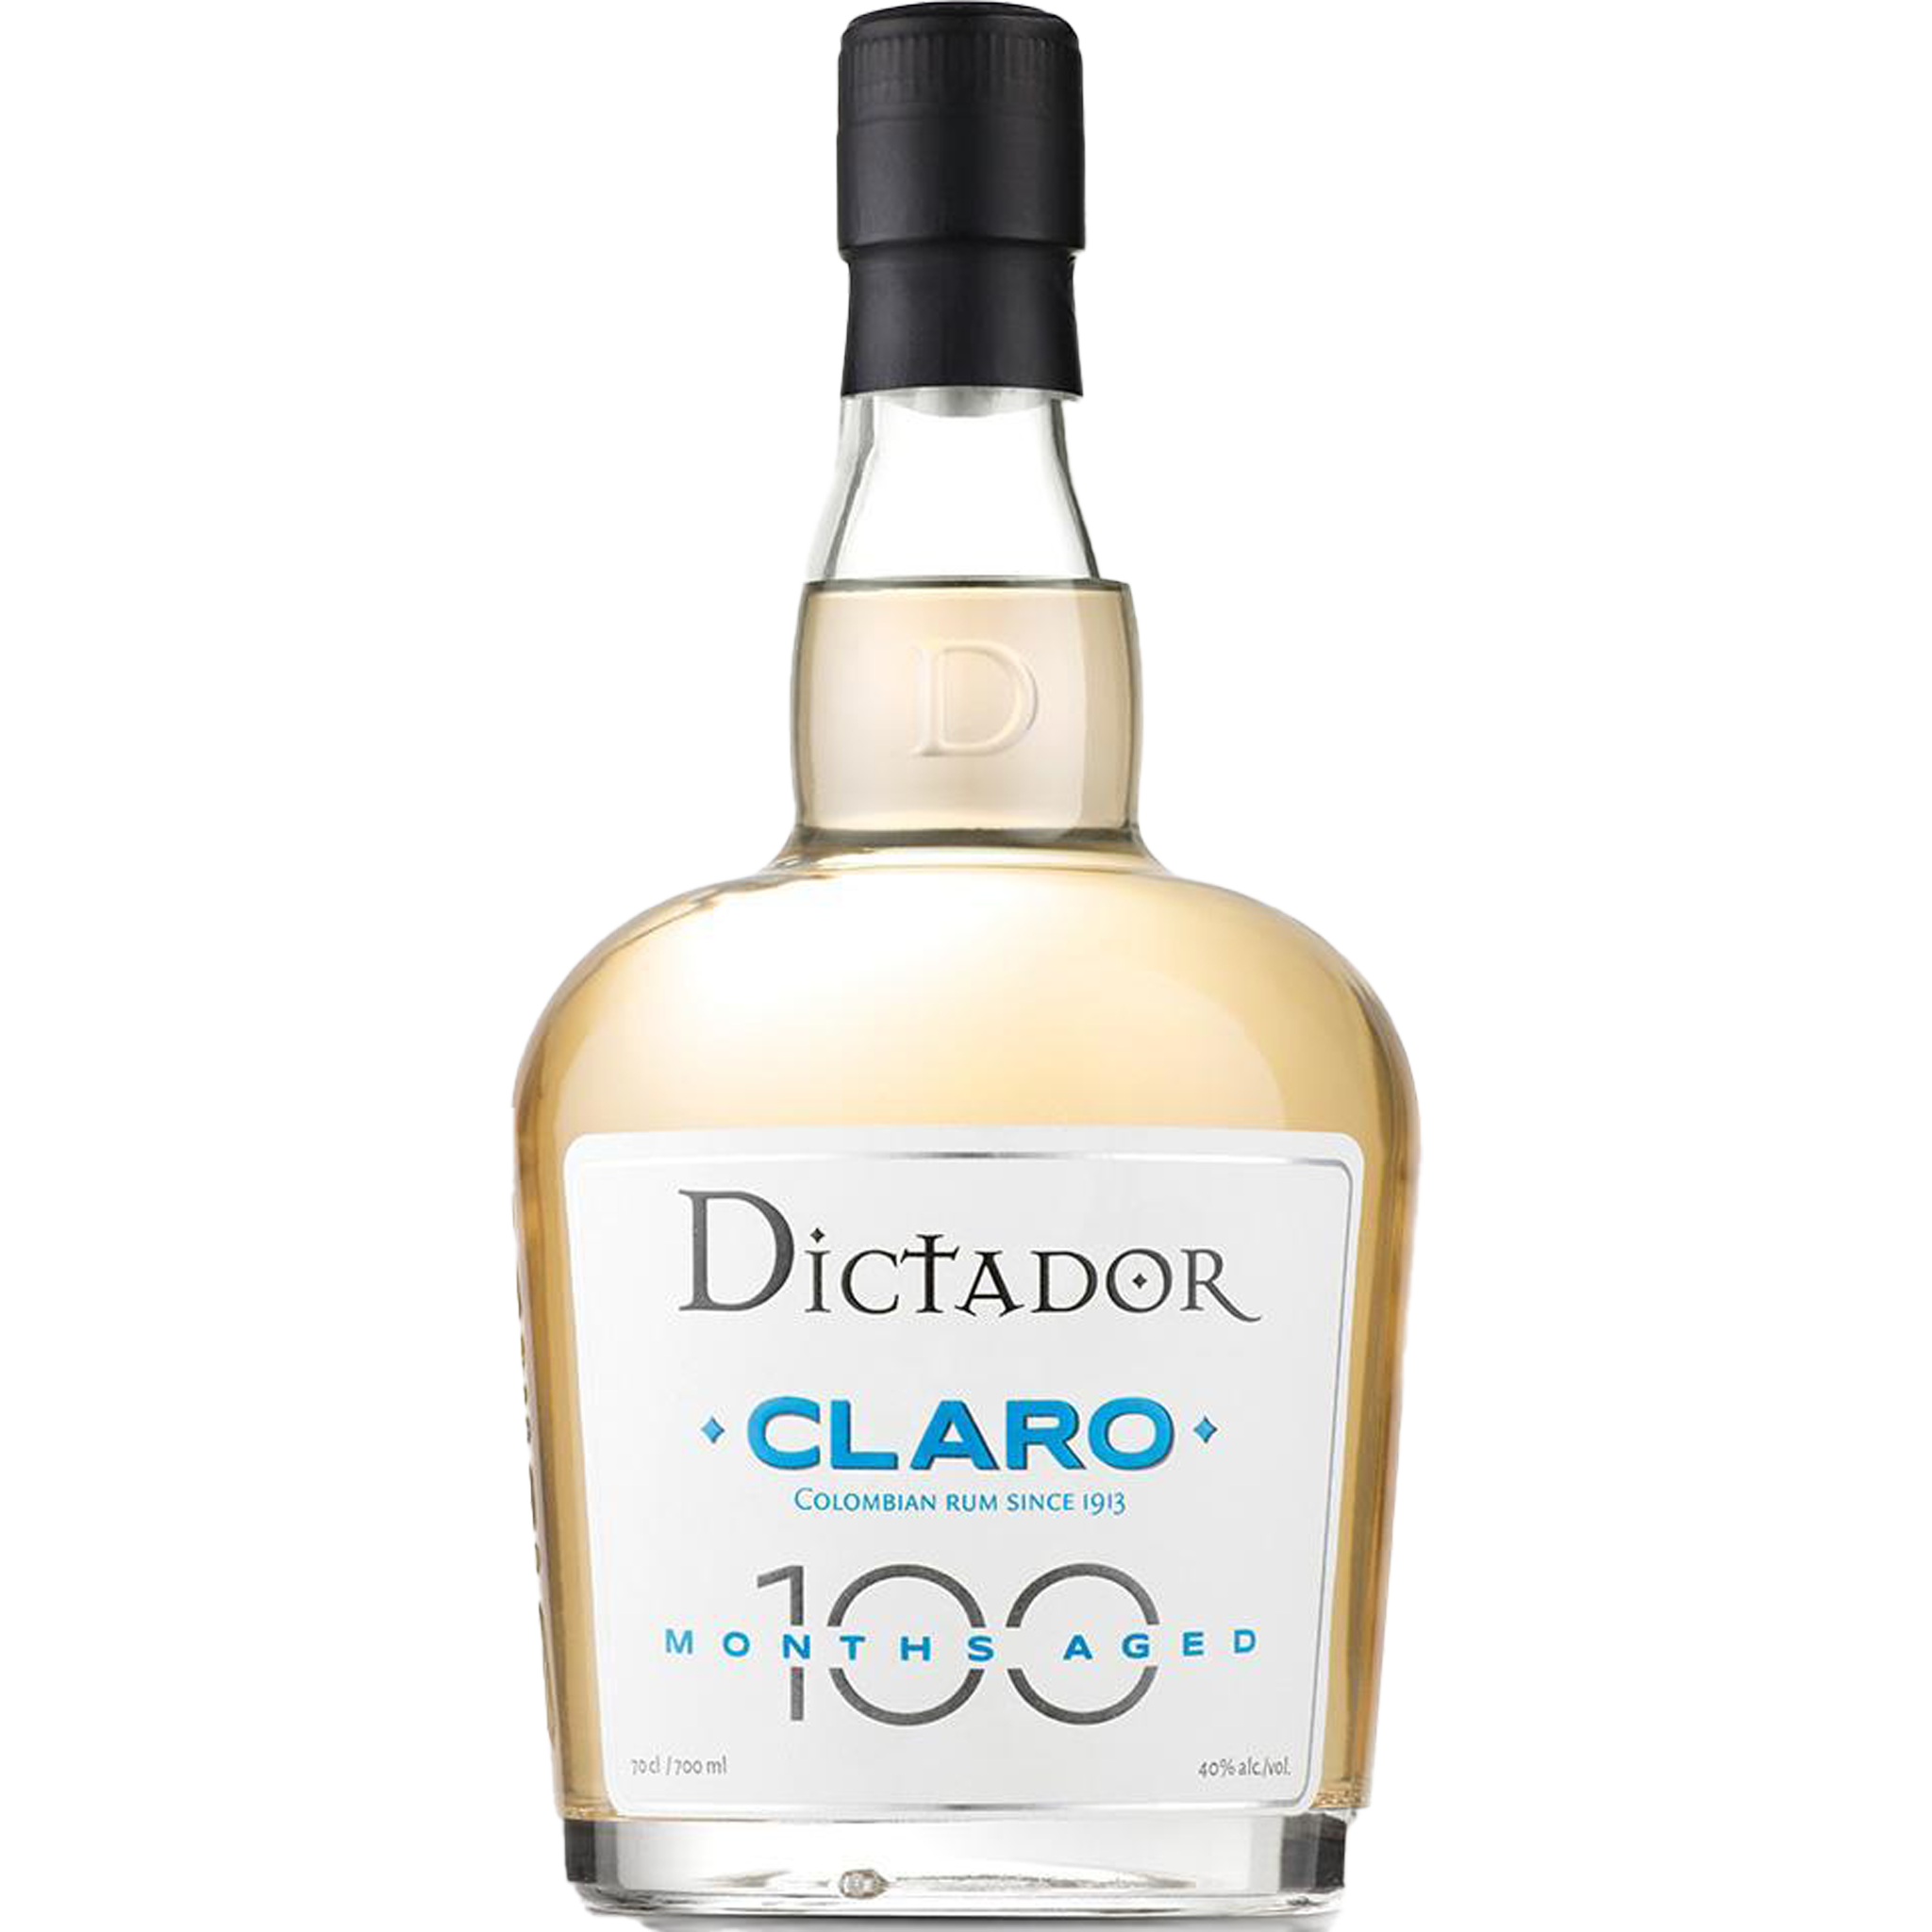 Dictador Claro 100 Months Aged Rum